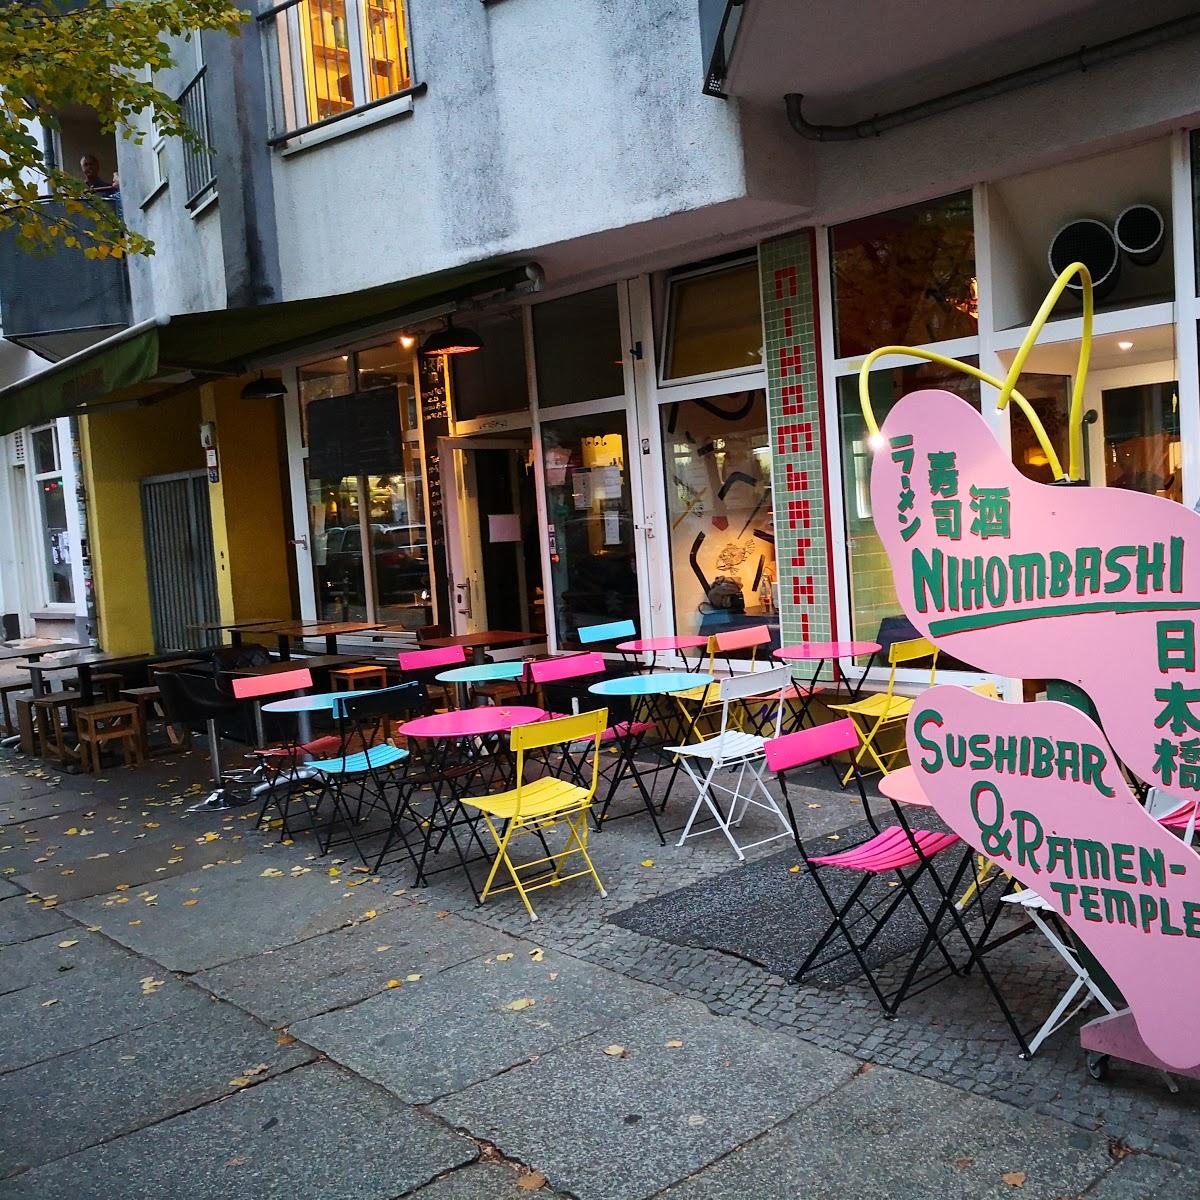 Restaurant "Nihombashi" in Berlin